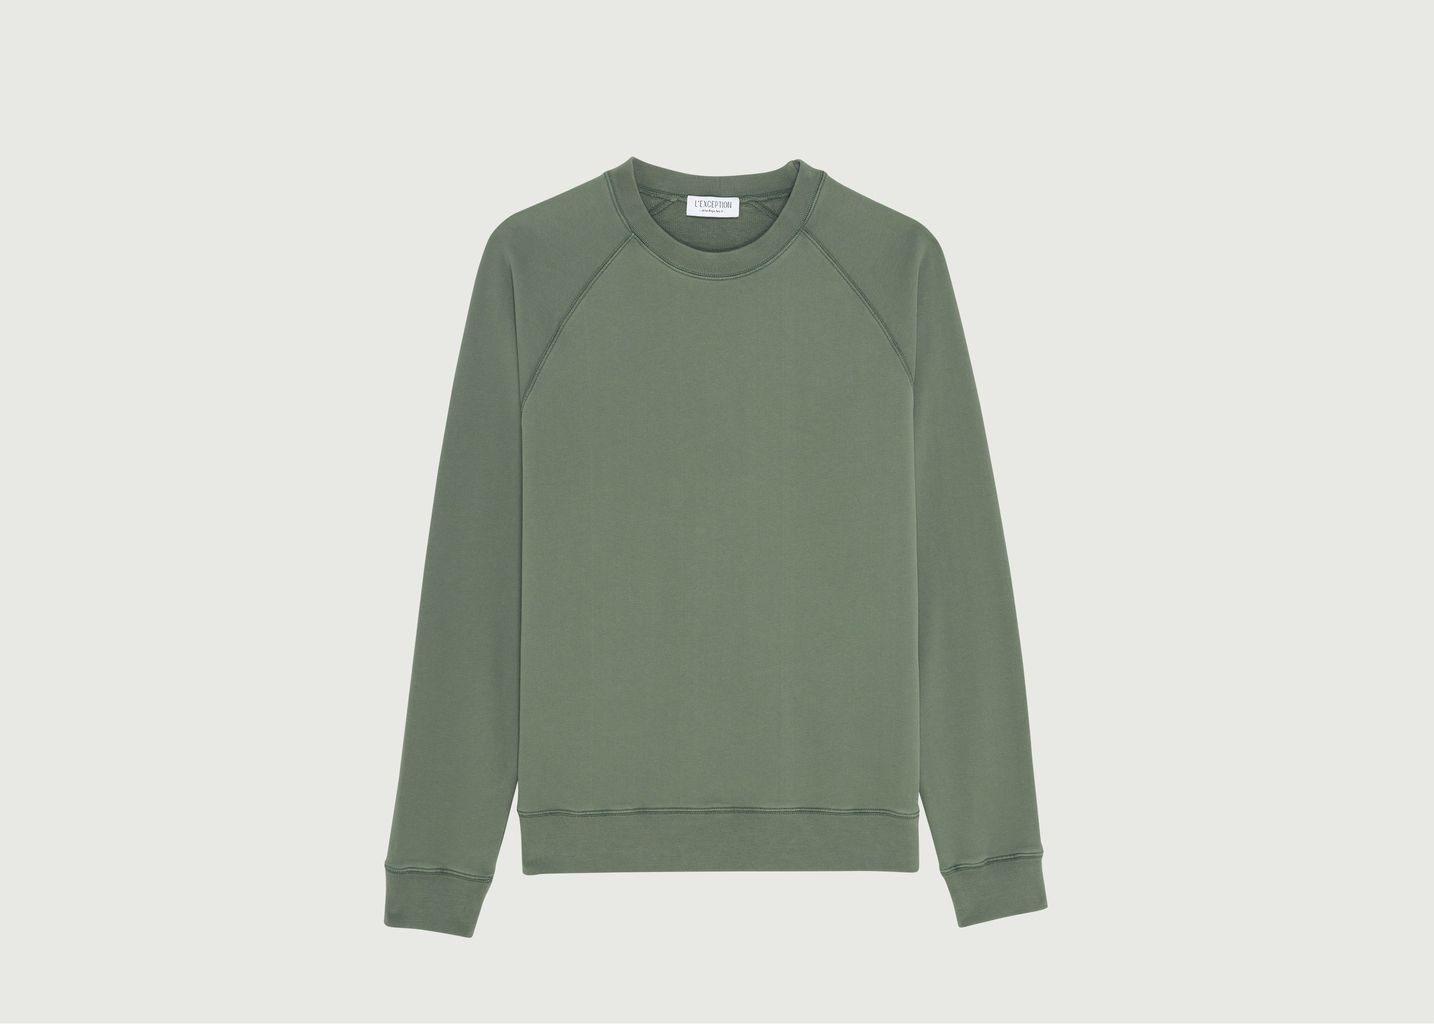 L’Exception Paris Organic Cotton Sweatshirt